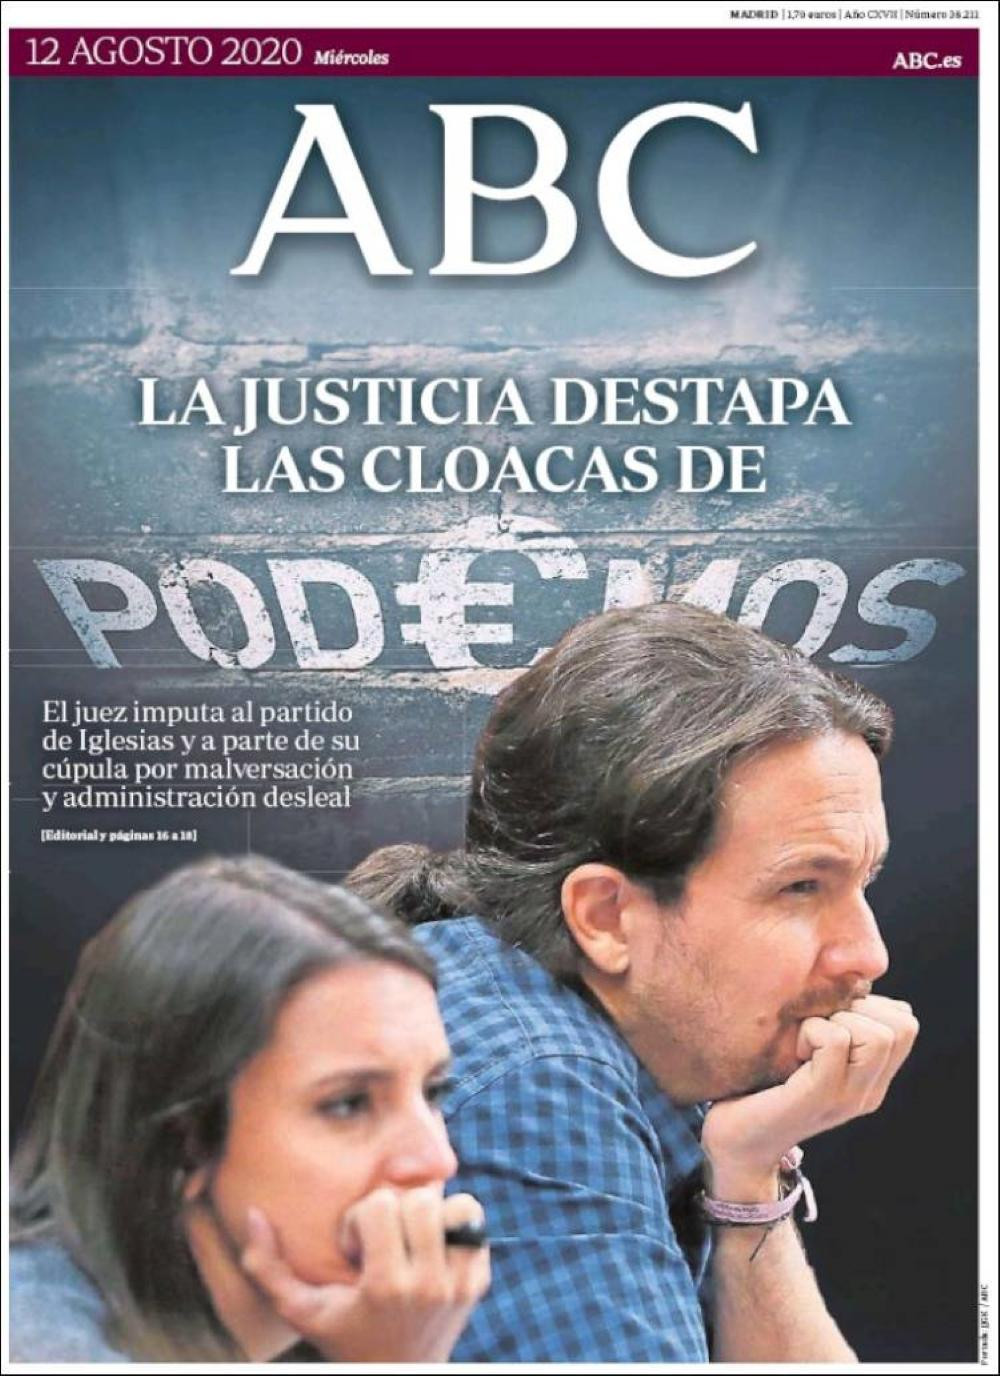 Las cloacas de Podemos, las primeras planas del diario 'ABC'